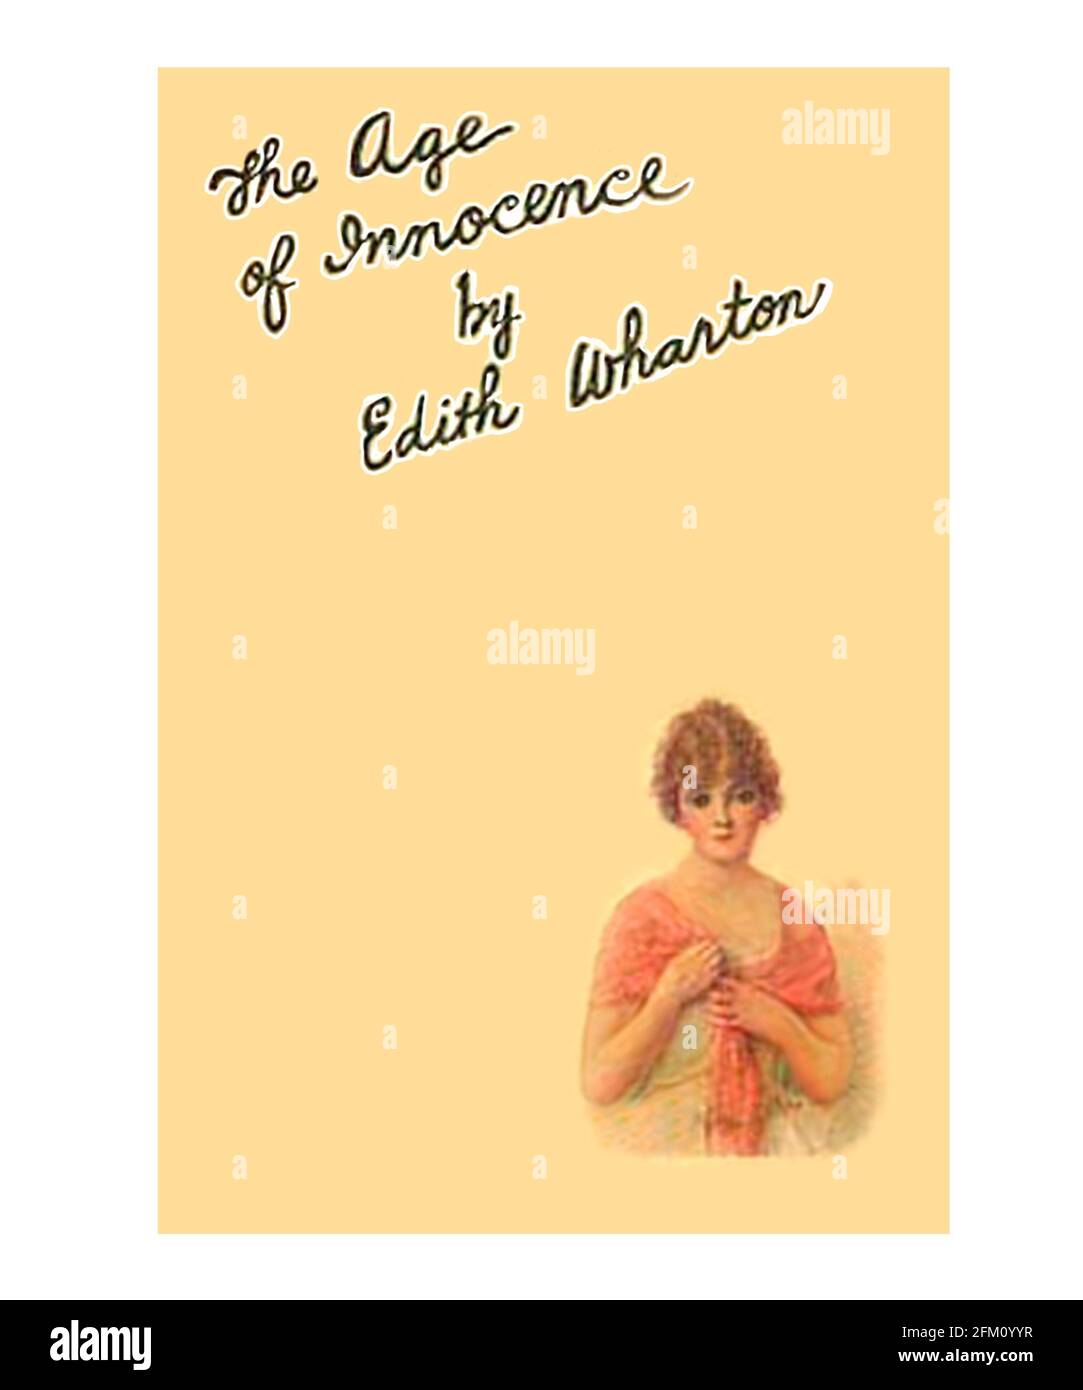 Wharton Edith Book Polvo Jacket The Age of Innocence actualizado y restablecer Foto de stock